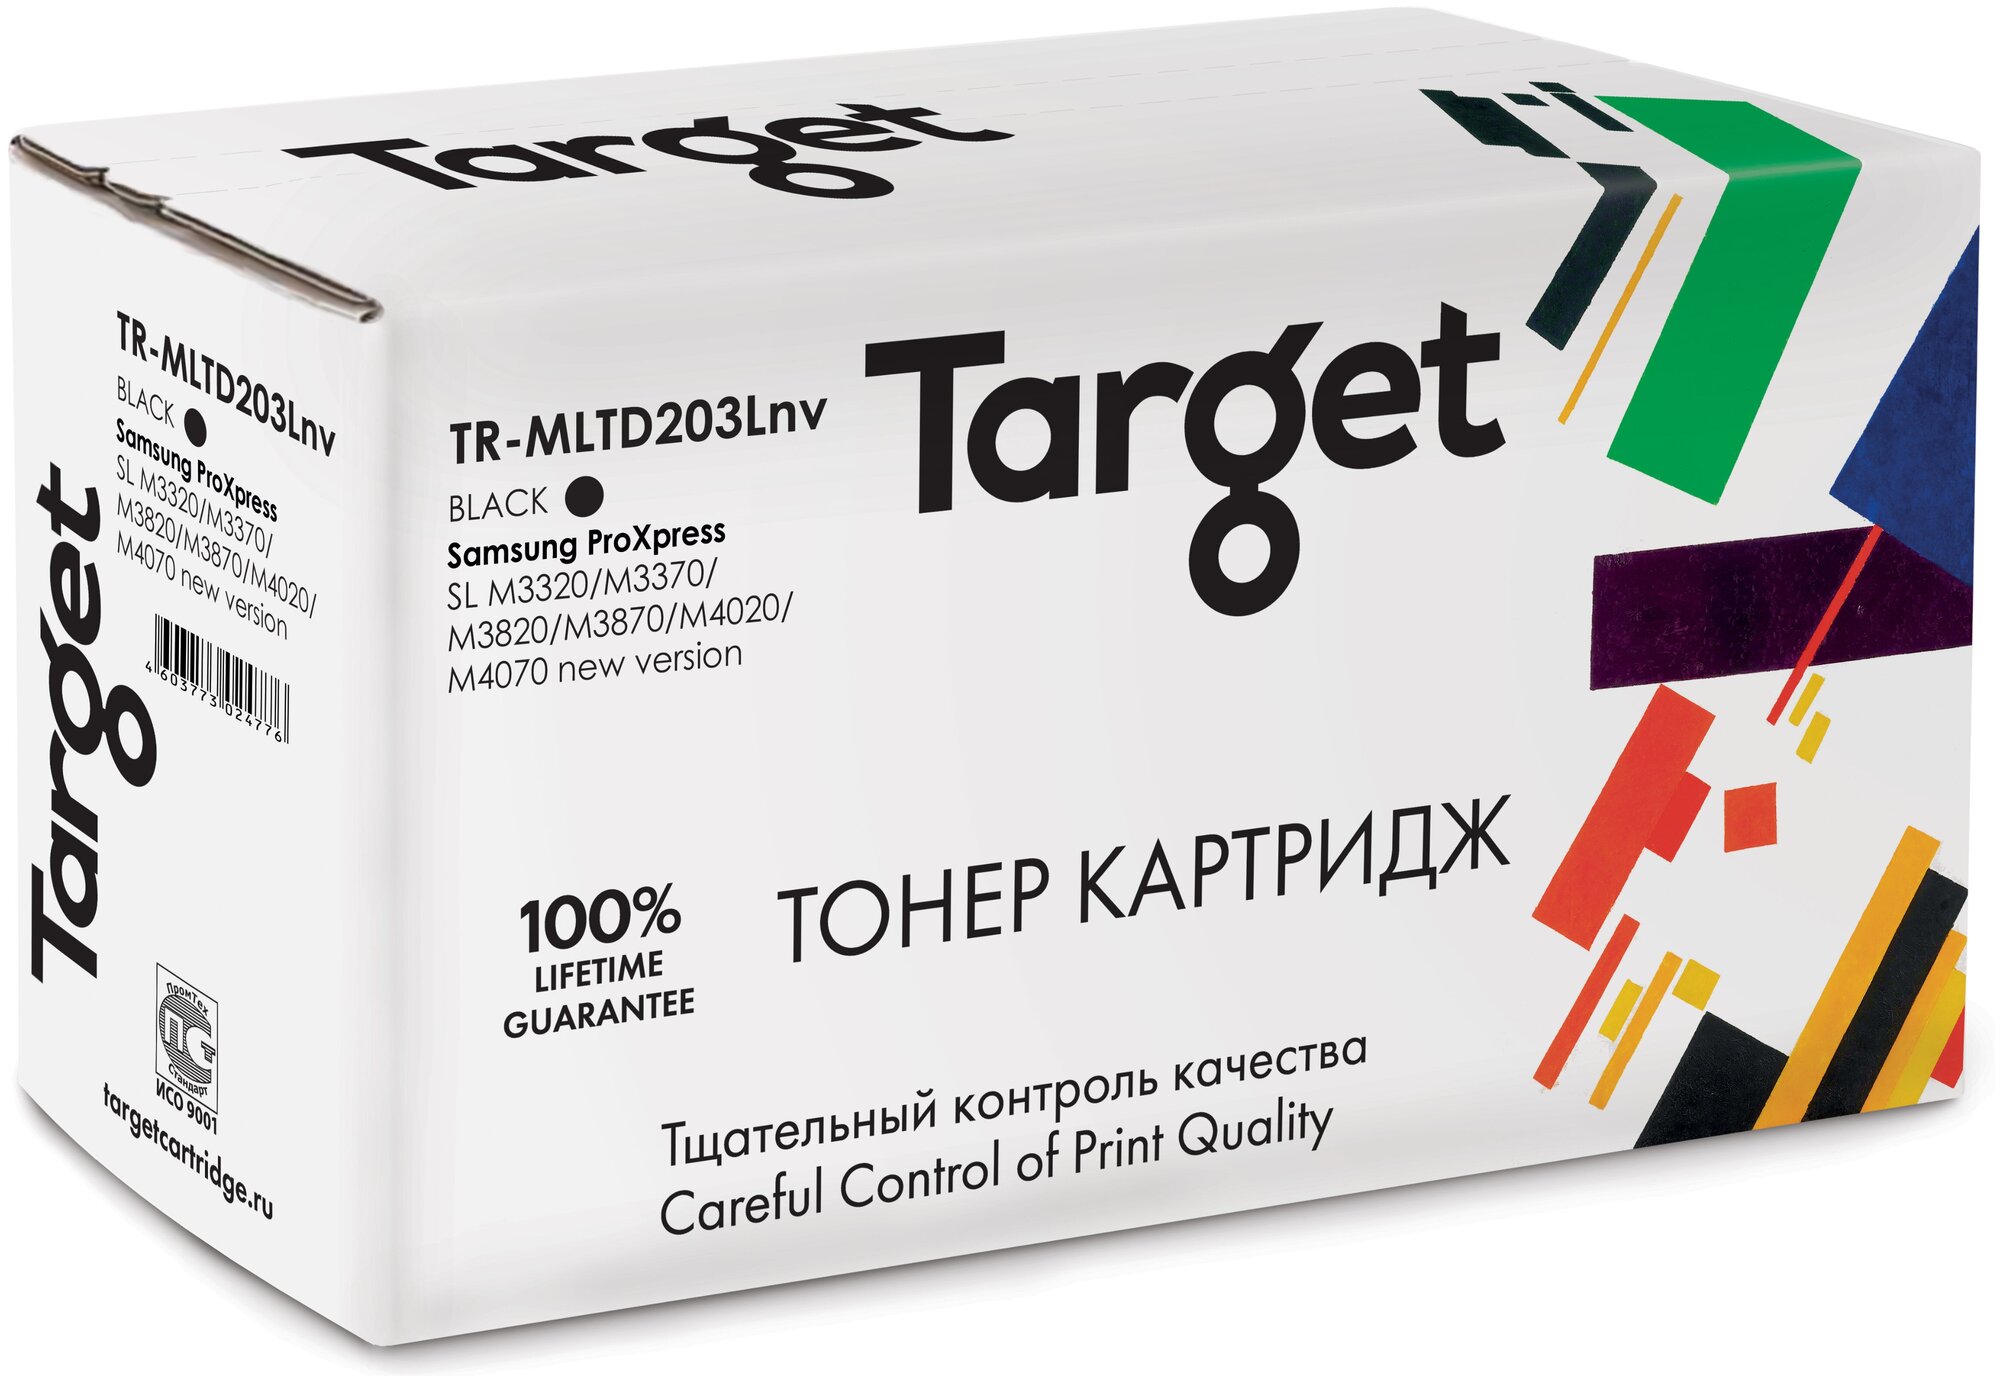 Картридж Target MLTD203Lnv, черный, для лазерного принтера, совместимый